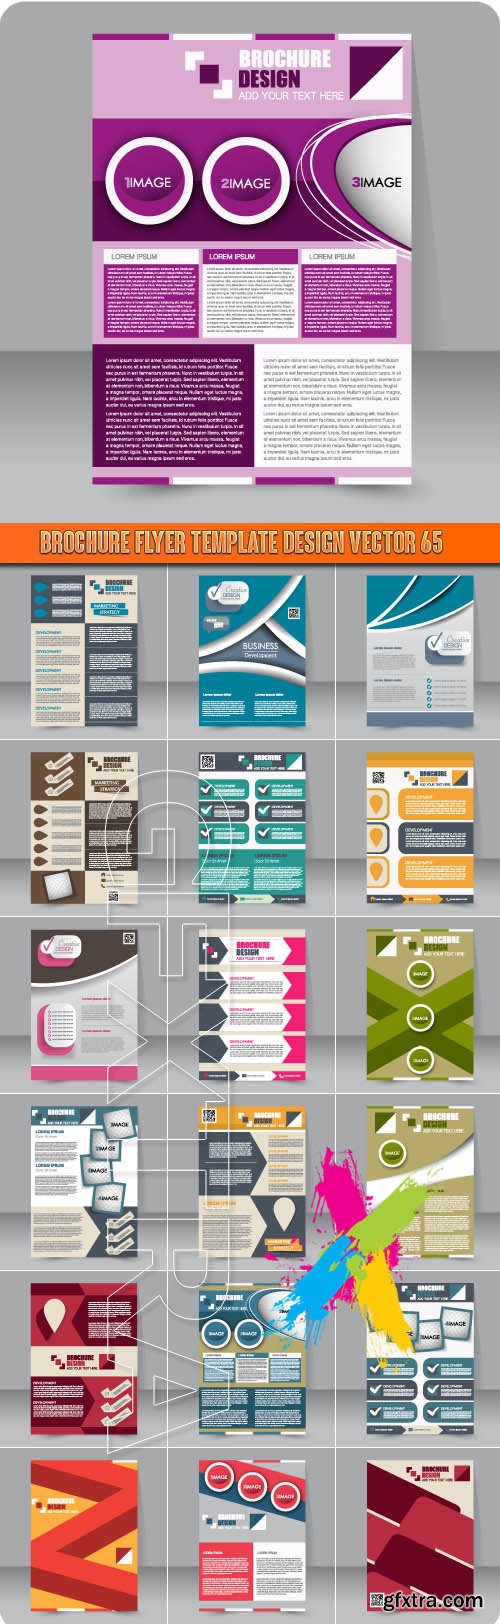 Brochure flyer template design vector 65